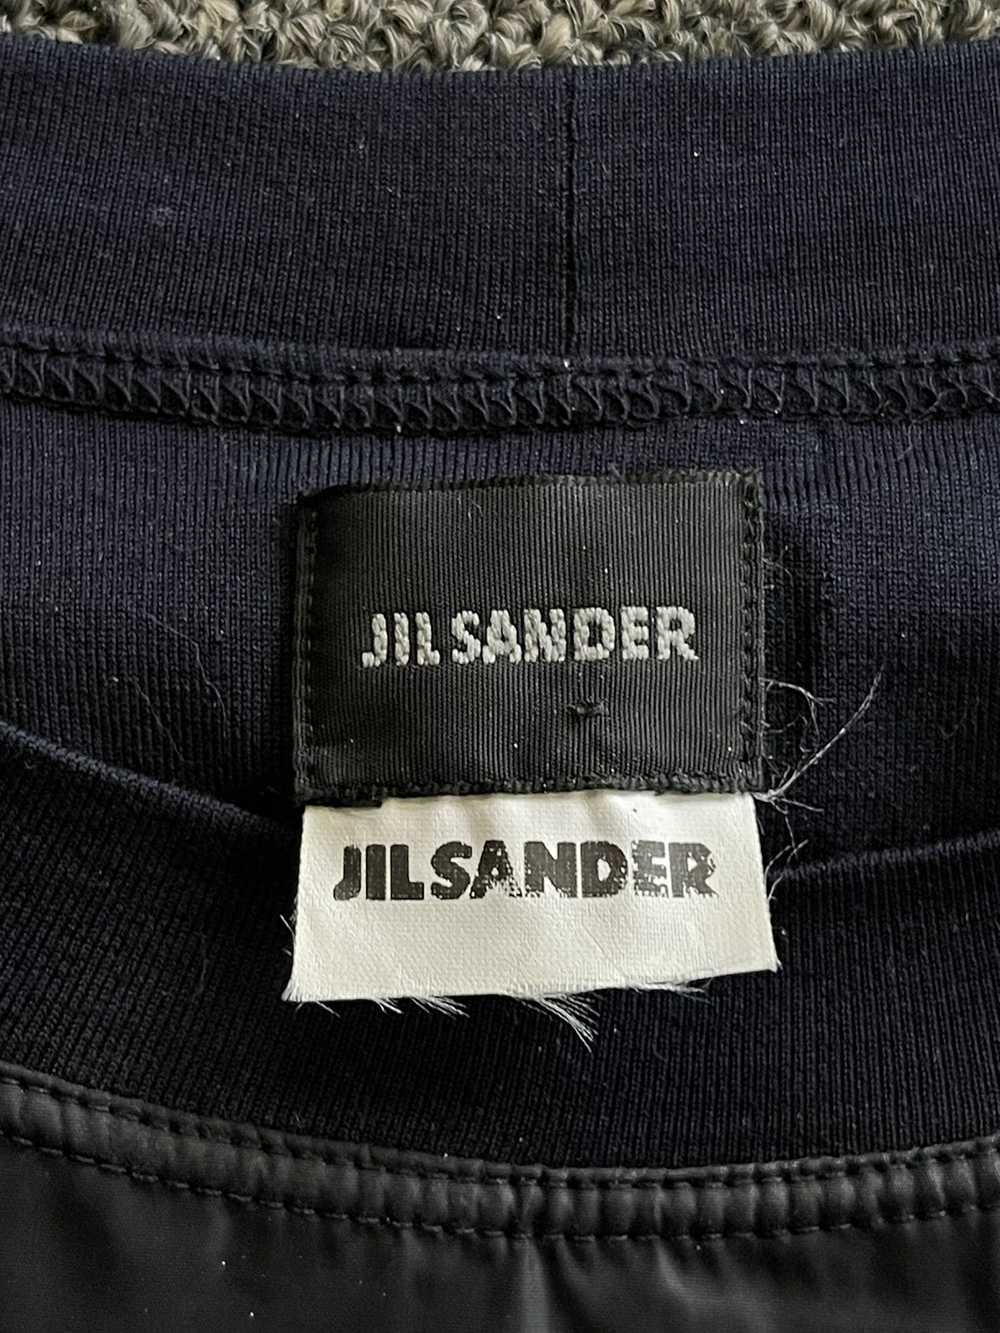 Jil Sander × Vintage Vintage Jil Sander 2 layer v… - image 6